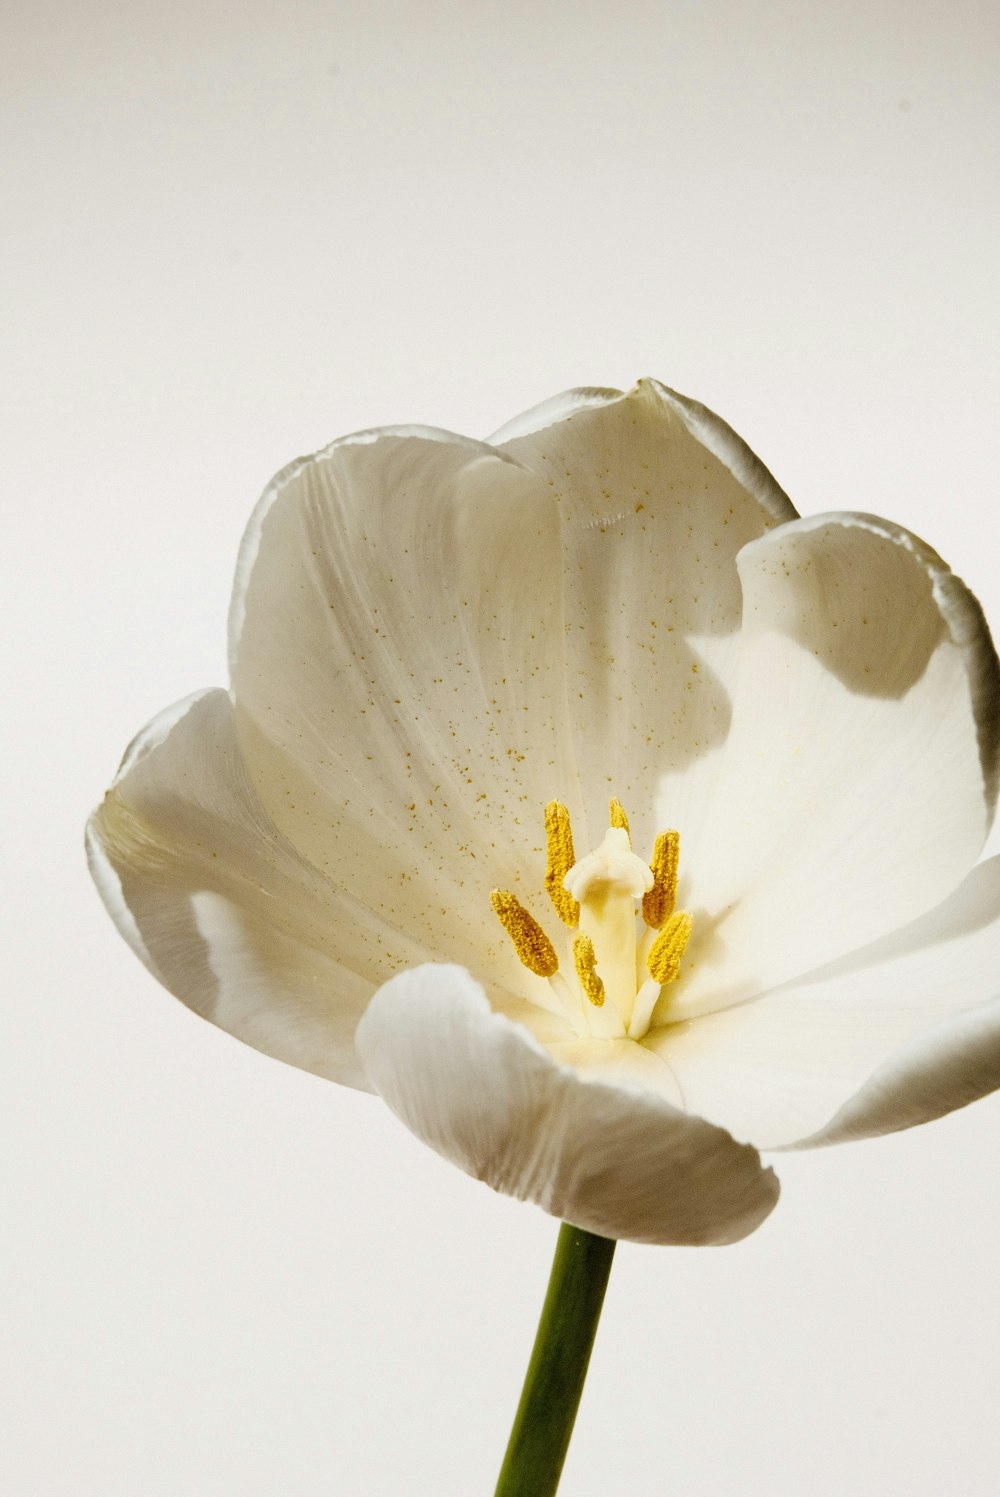 fiore bianco e giallo nella fotografia ravvicinata